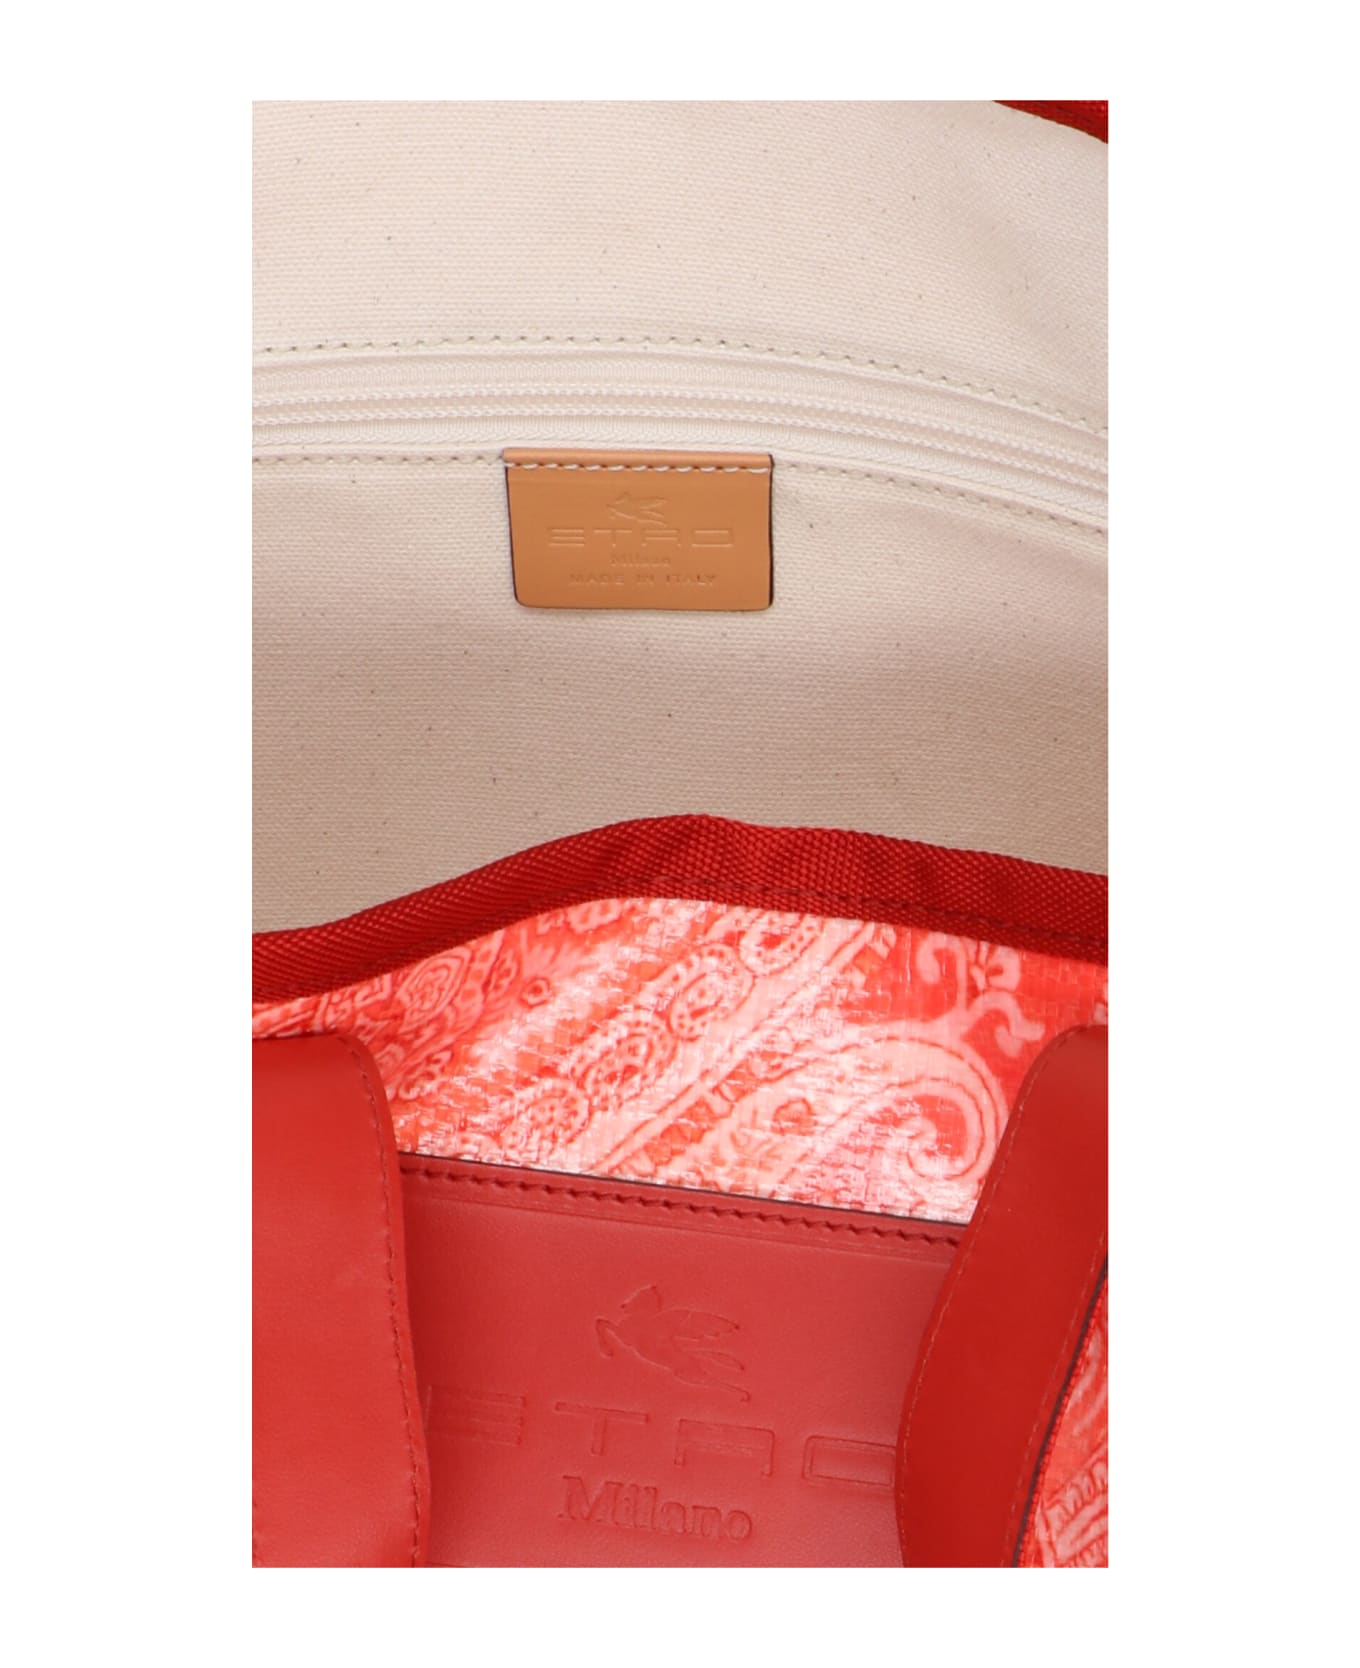 Etro 'globetrotter' Shopping Bag - Orange